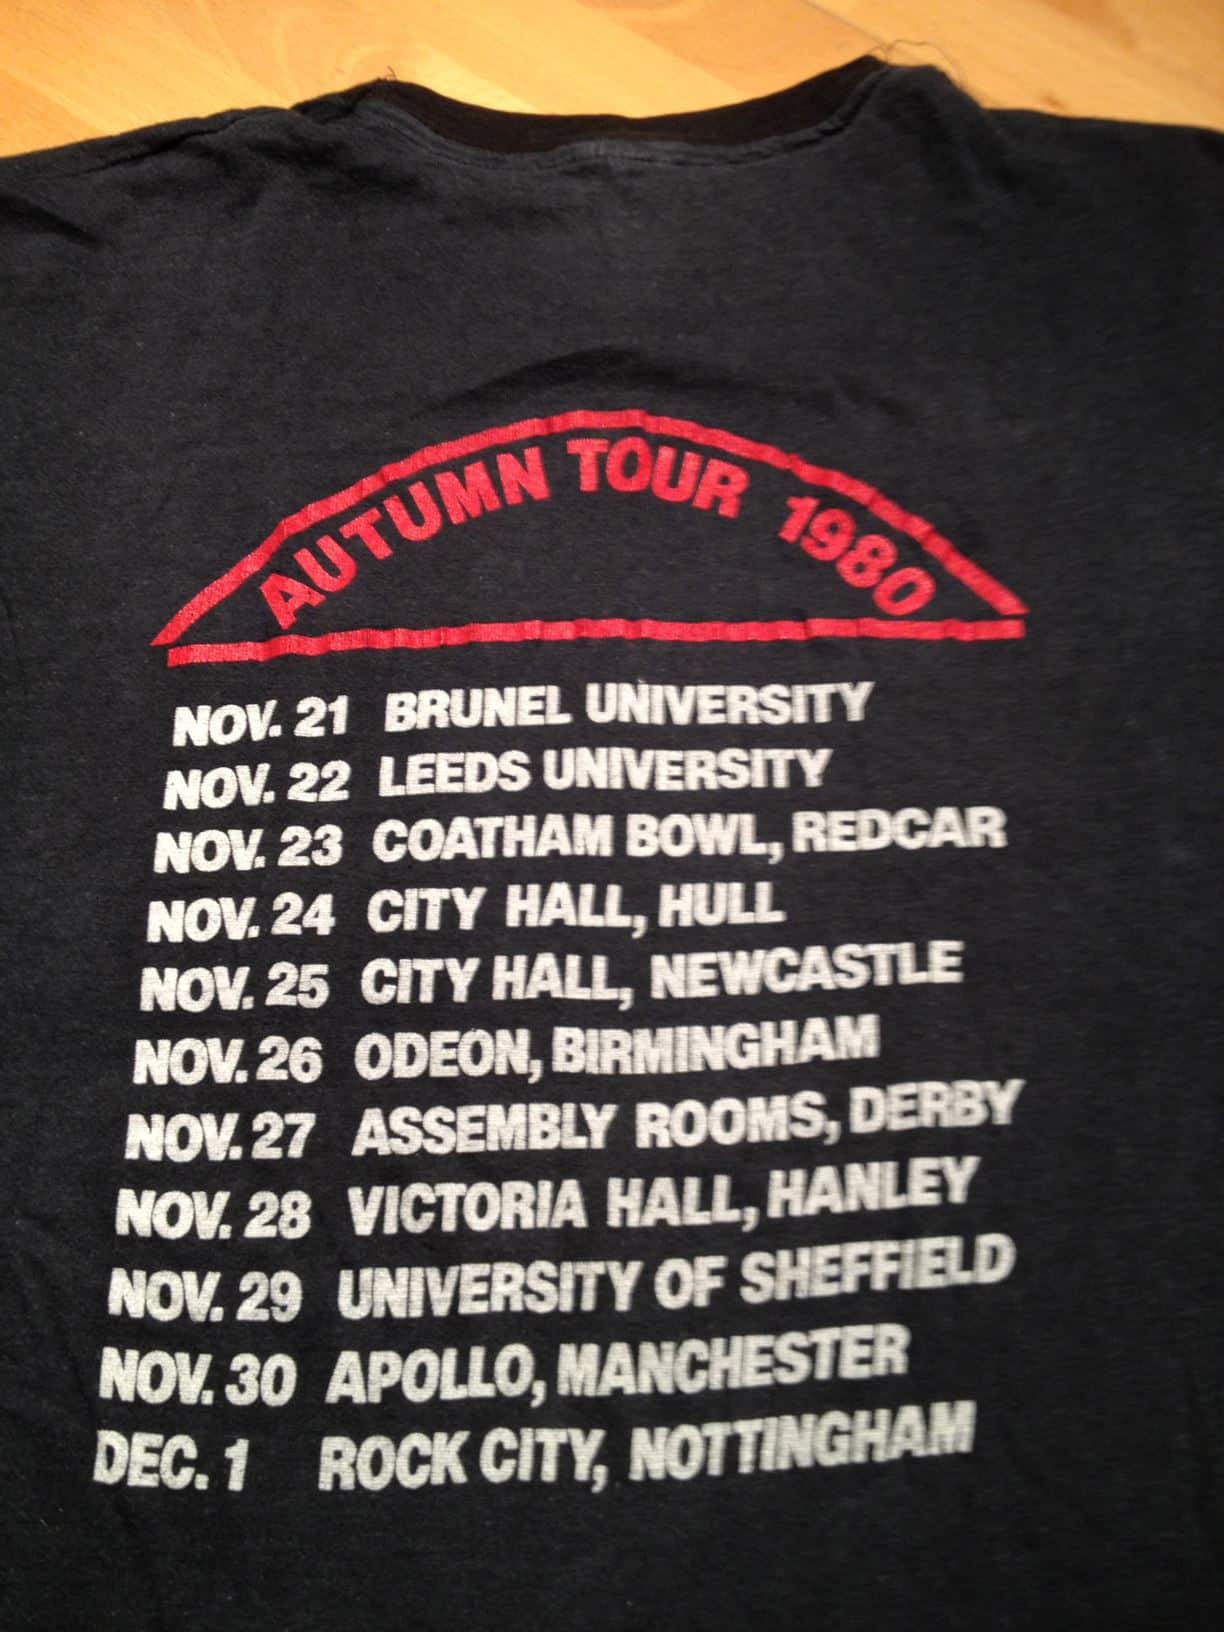 vintage iron maiden autumn tour 1980 t-shirt Nov 21 to Dec 1